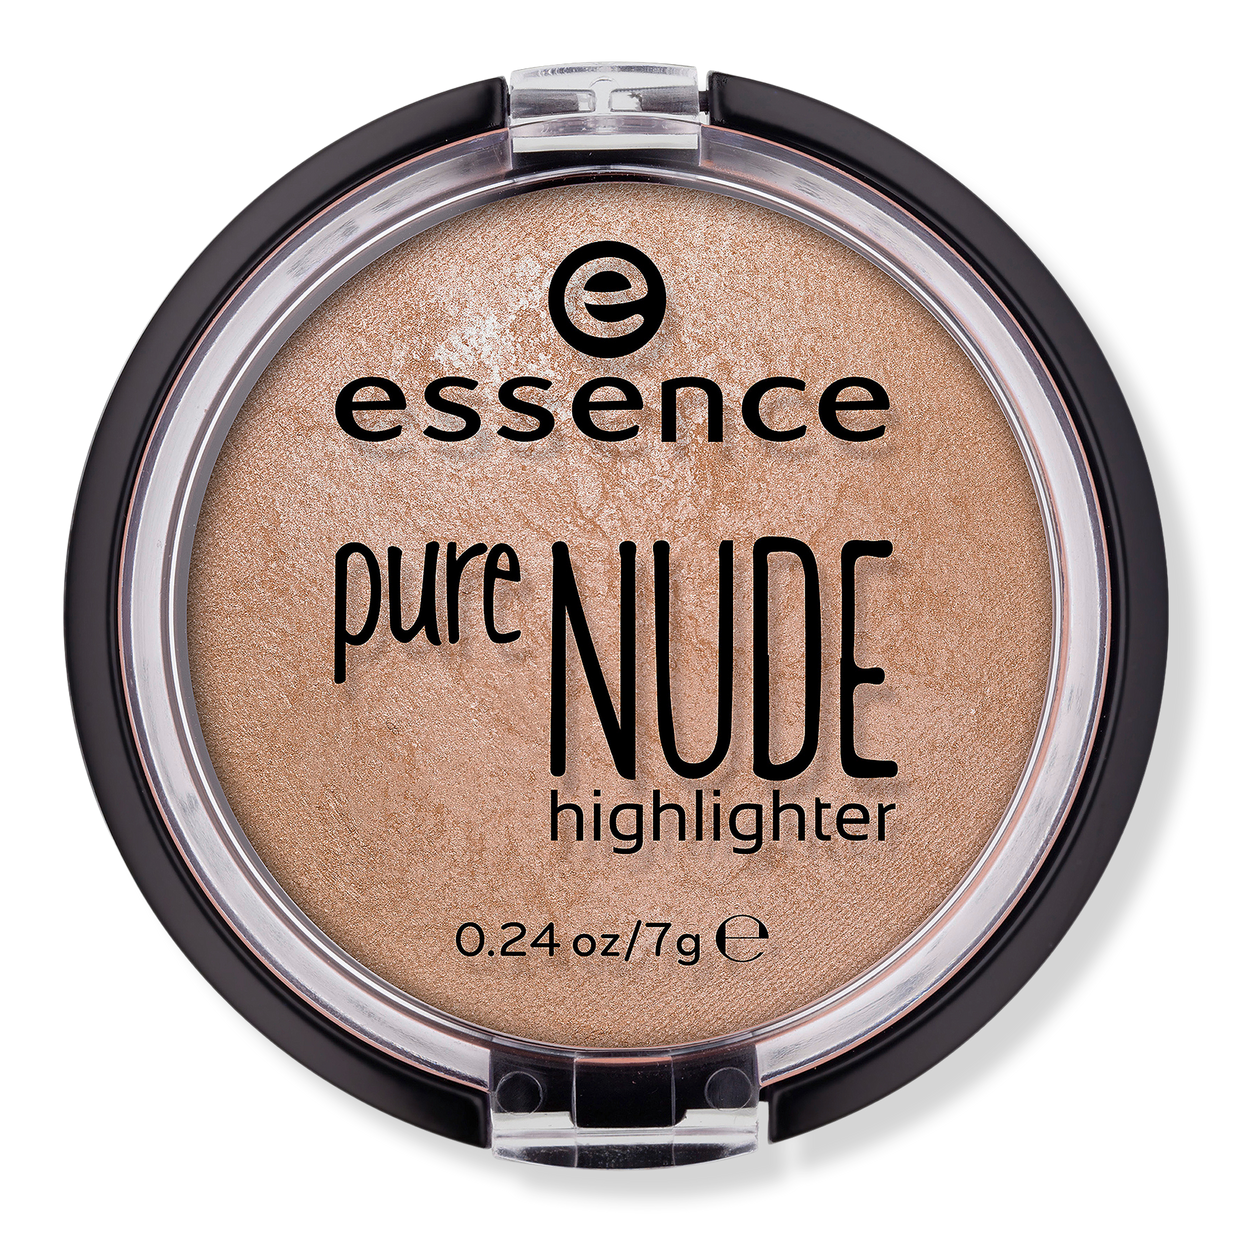 Nude - Essence | Beauty